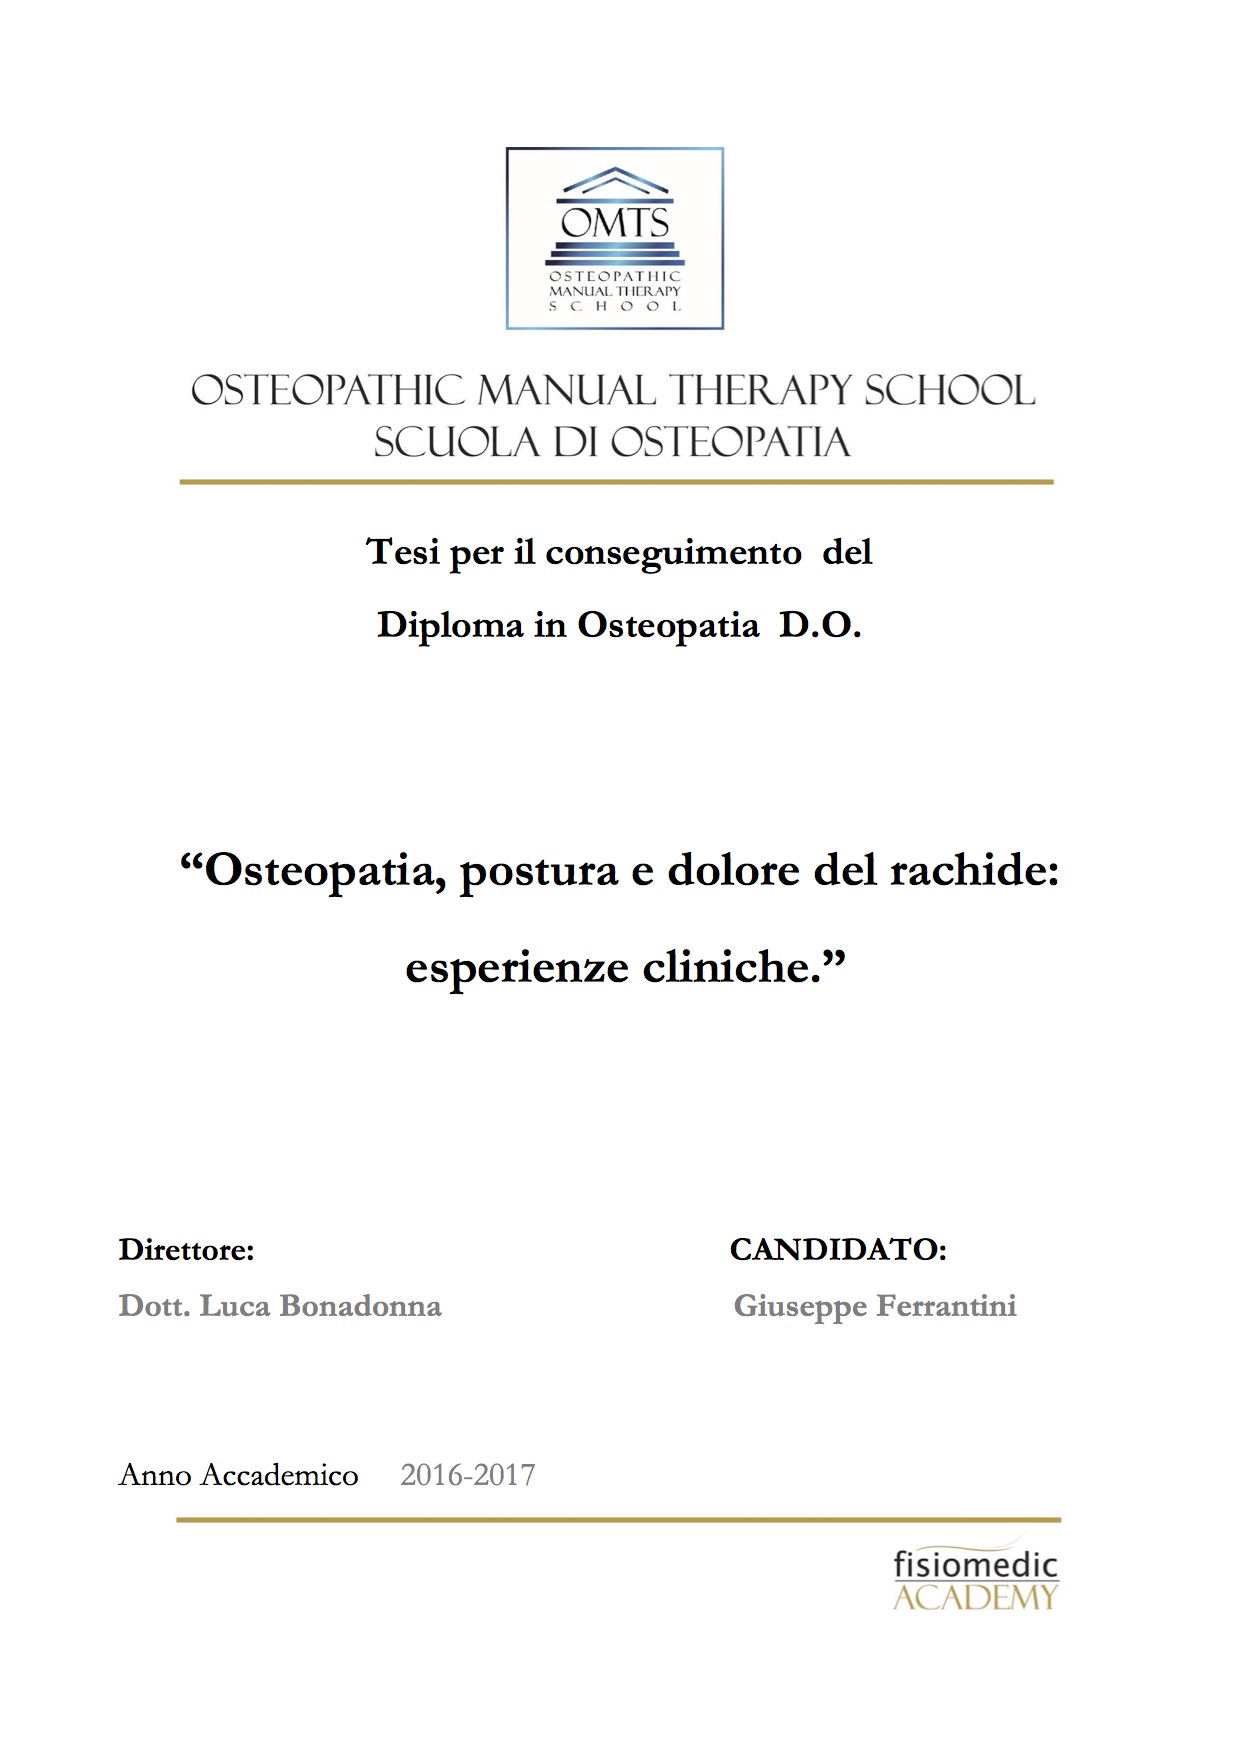 Giuseppe Ferrantini Tesi Diploma Osteopatia 2017